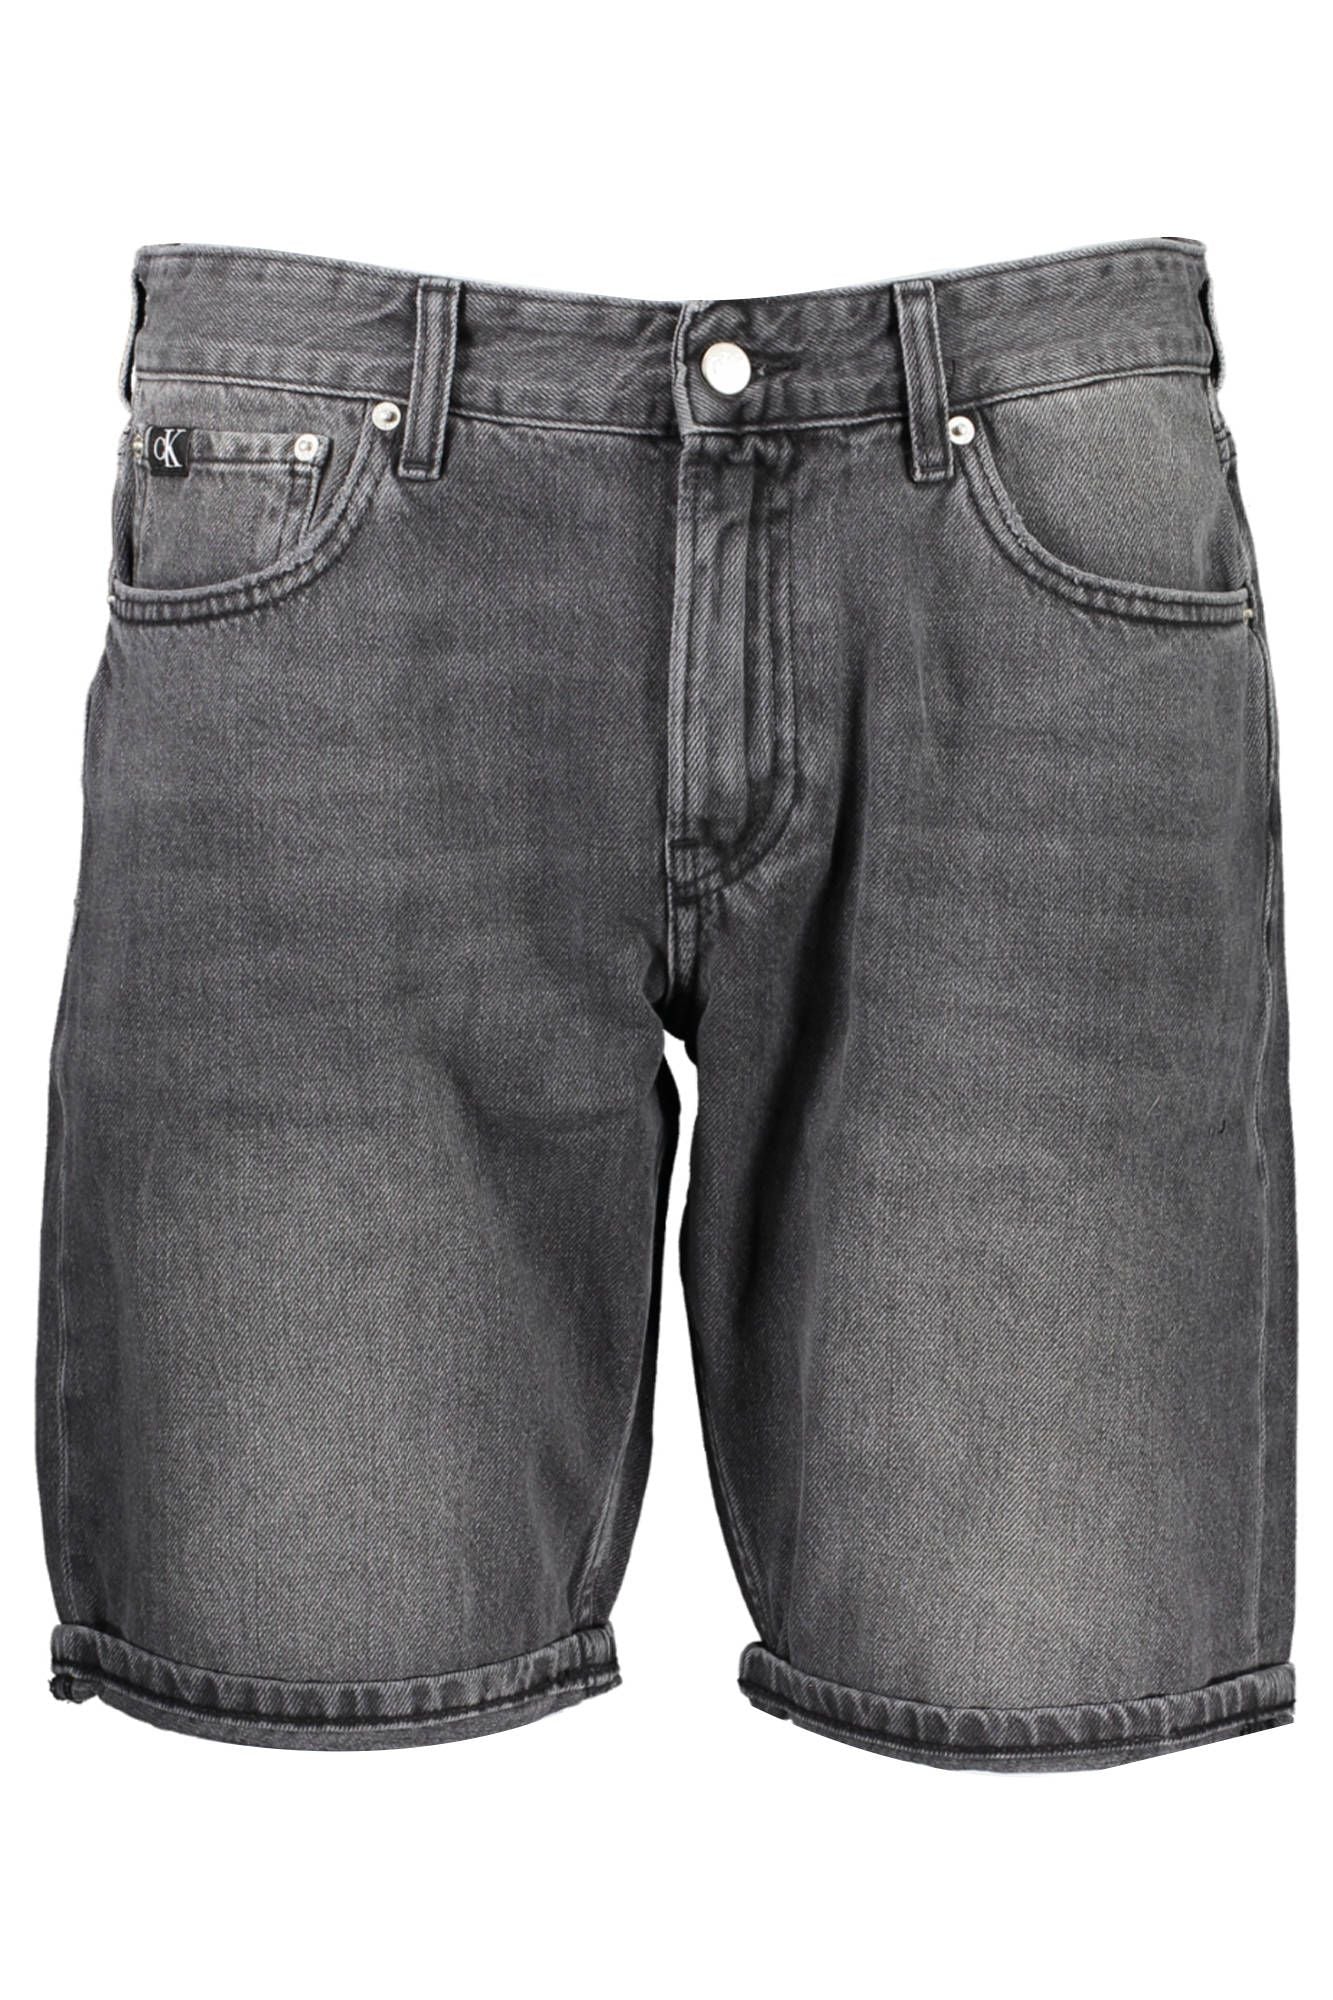 Calvin Klein  Black Cotton Jeans & Pant